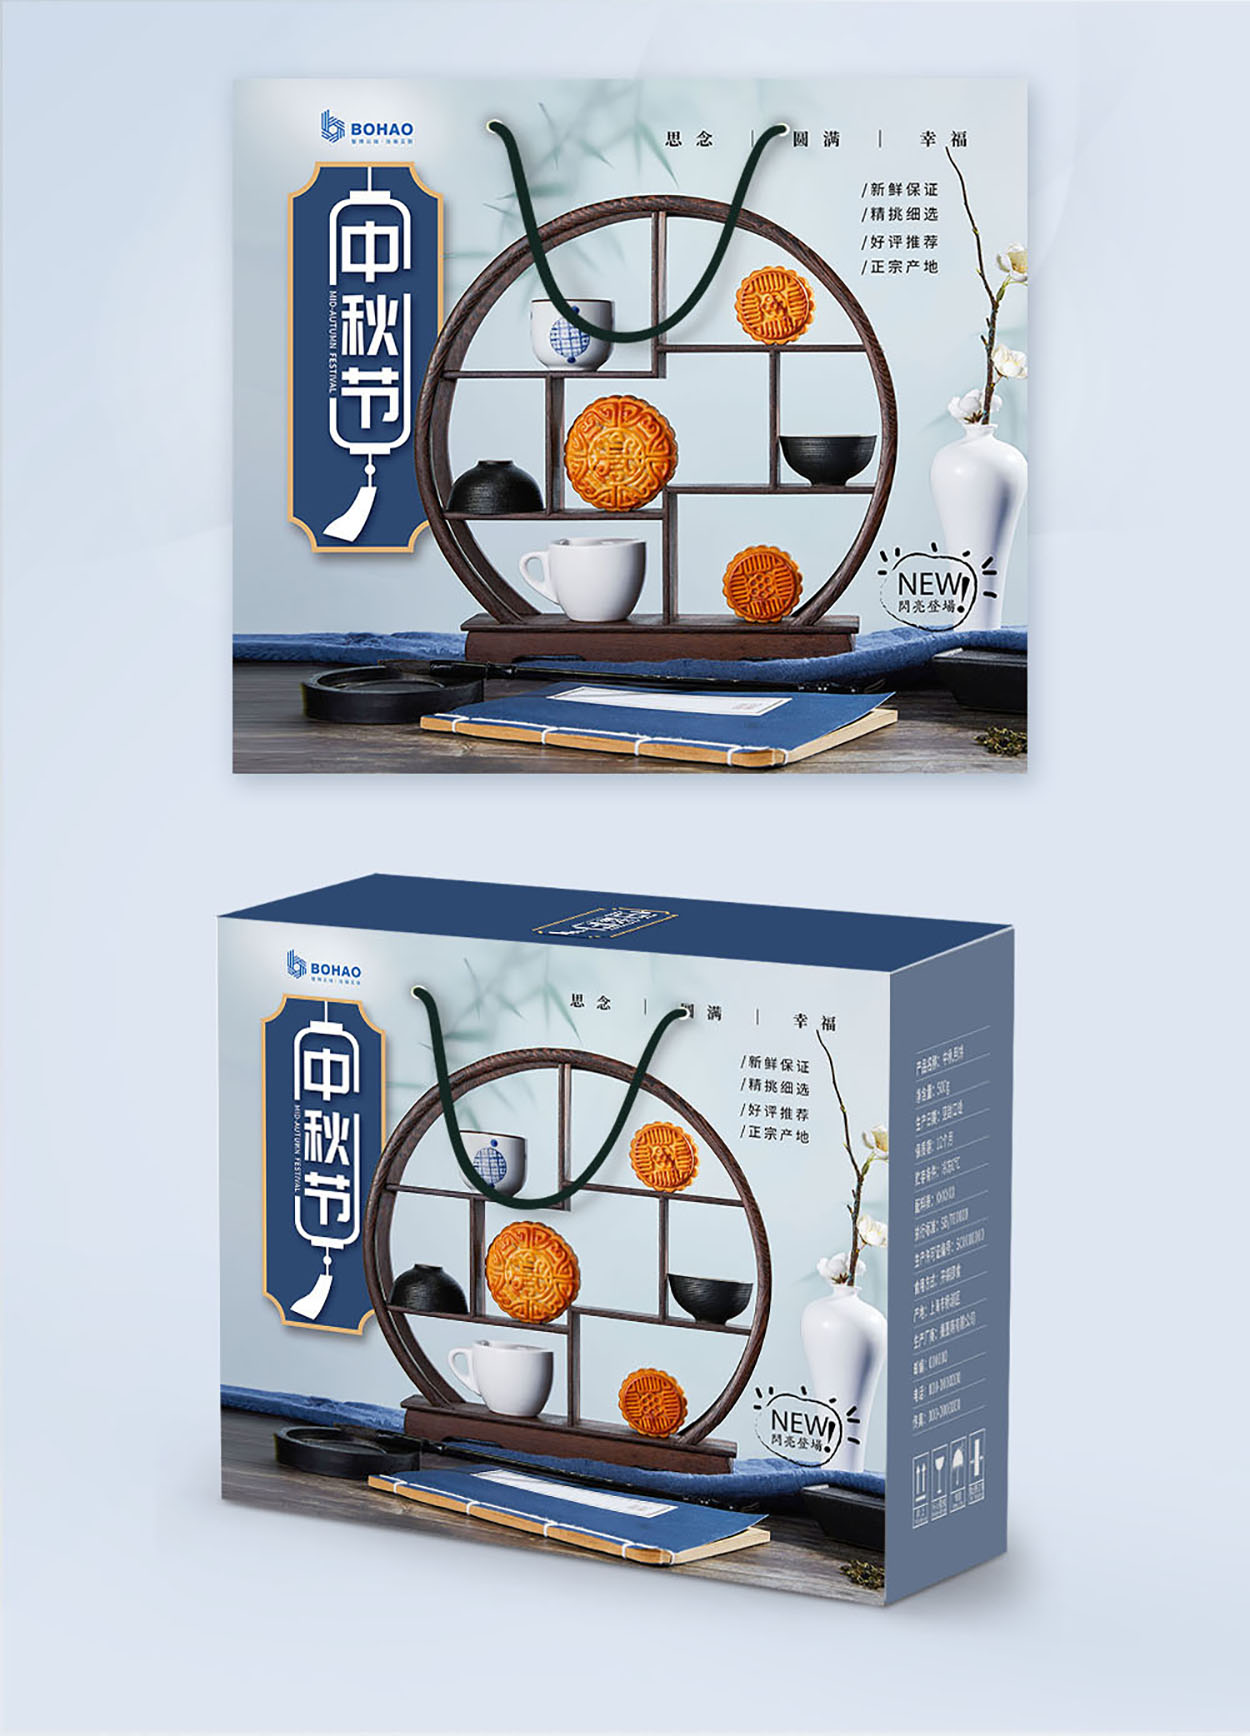 月饼包装设计-广州/深圳博浩公司